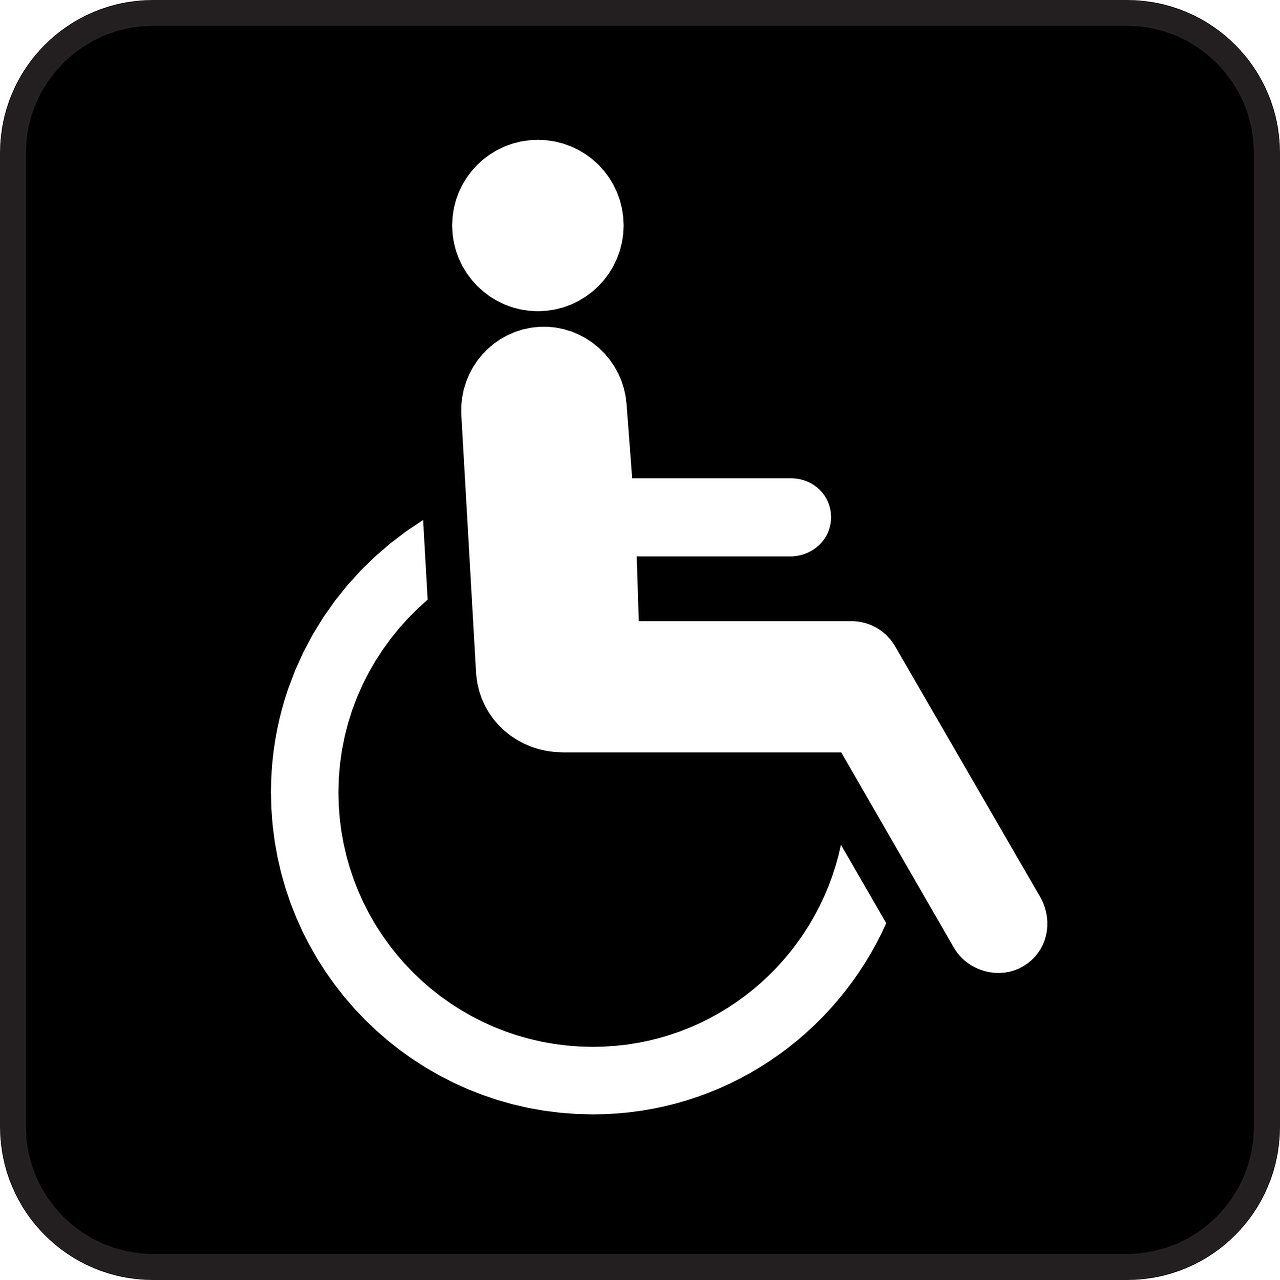 ANGO Afd Tilburg ervaringen instelling gehandicaptenzorg verstandelijk gehandicapten